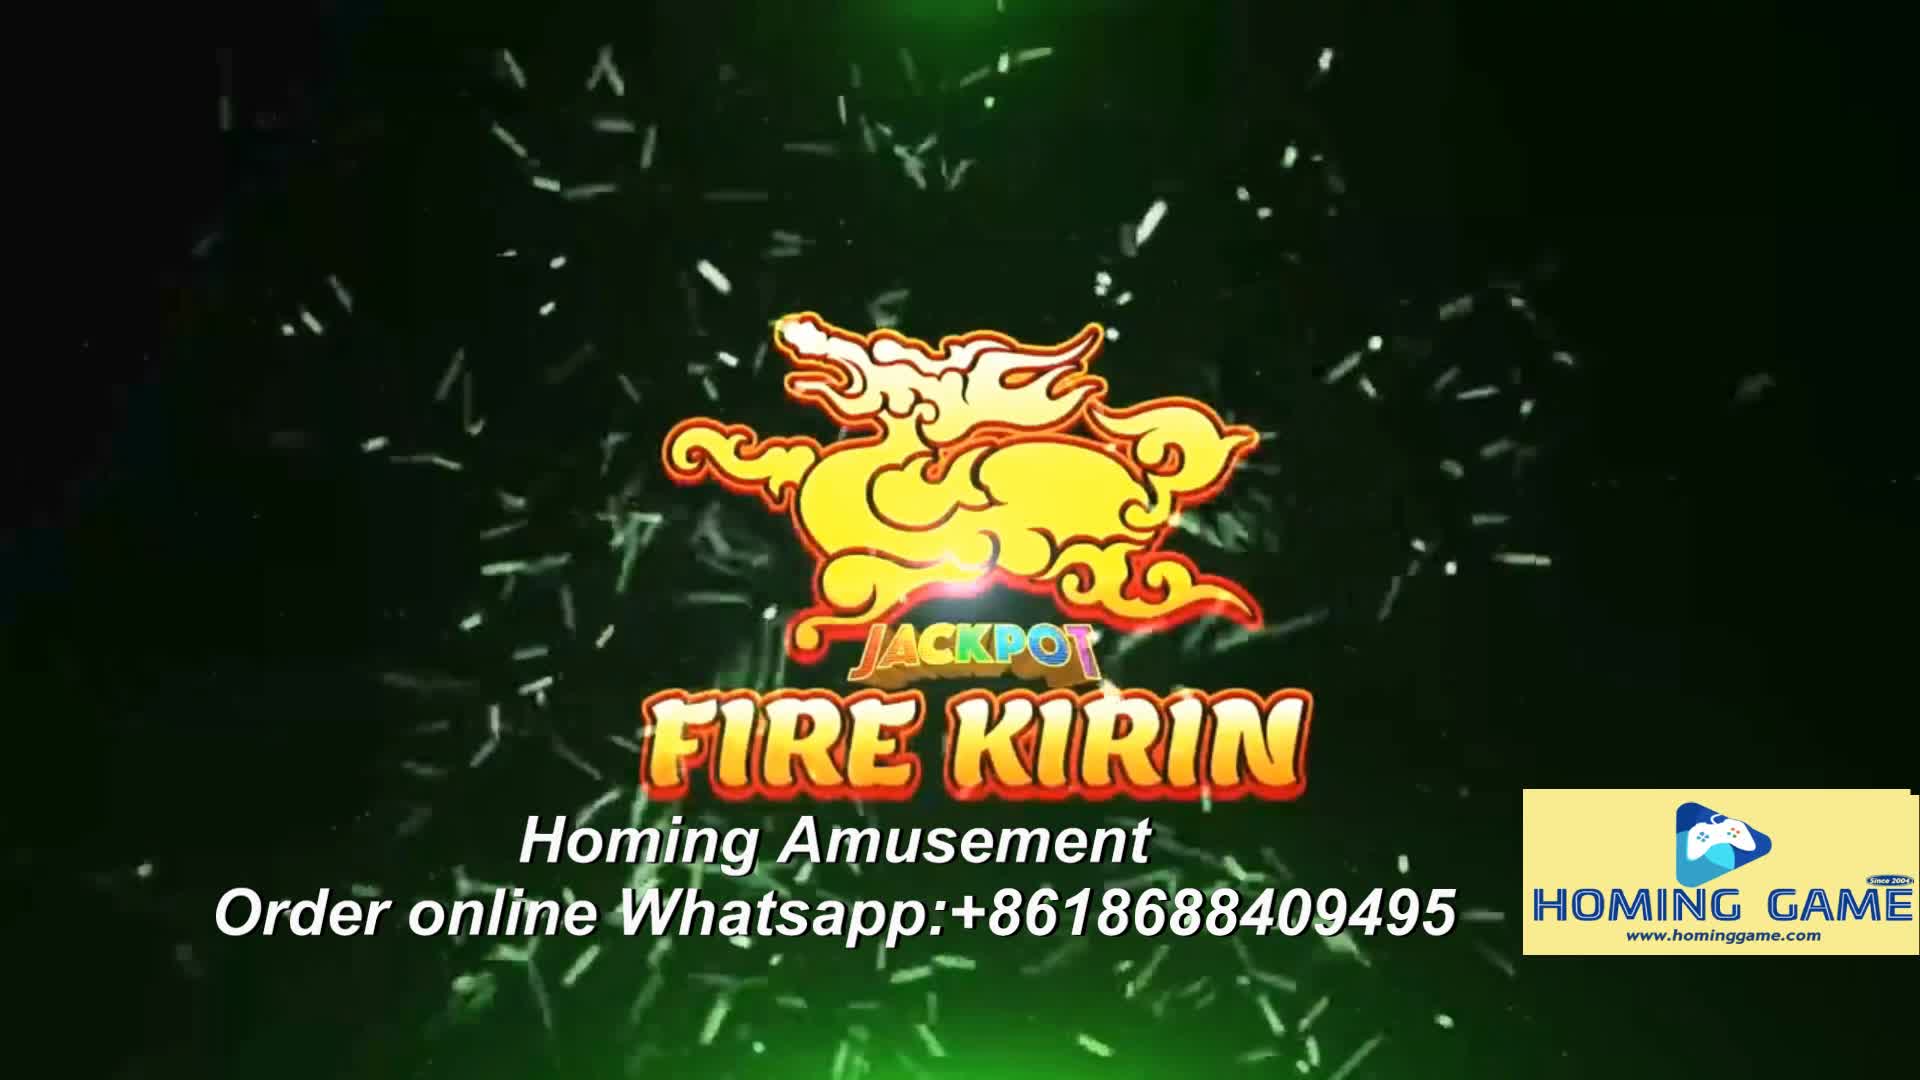 Official Engineer Team Supply  Full set of Fire Kirin online Gaming Apps Original Source Code#casino#sweepstake#fireKirinApps#OnlineFishingGameAPPS#gamevault#juwaonline